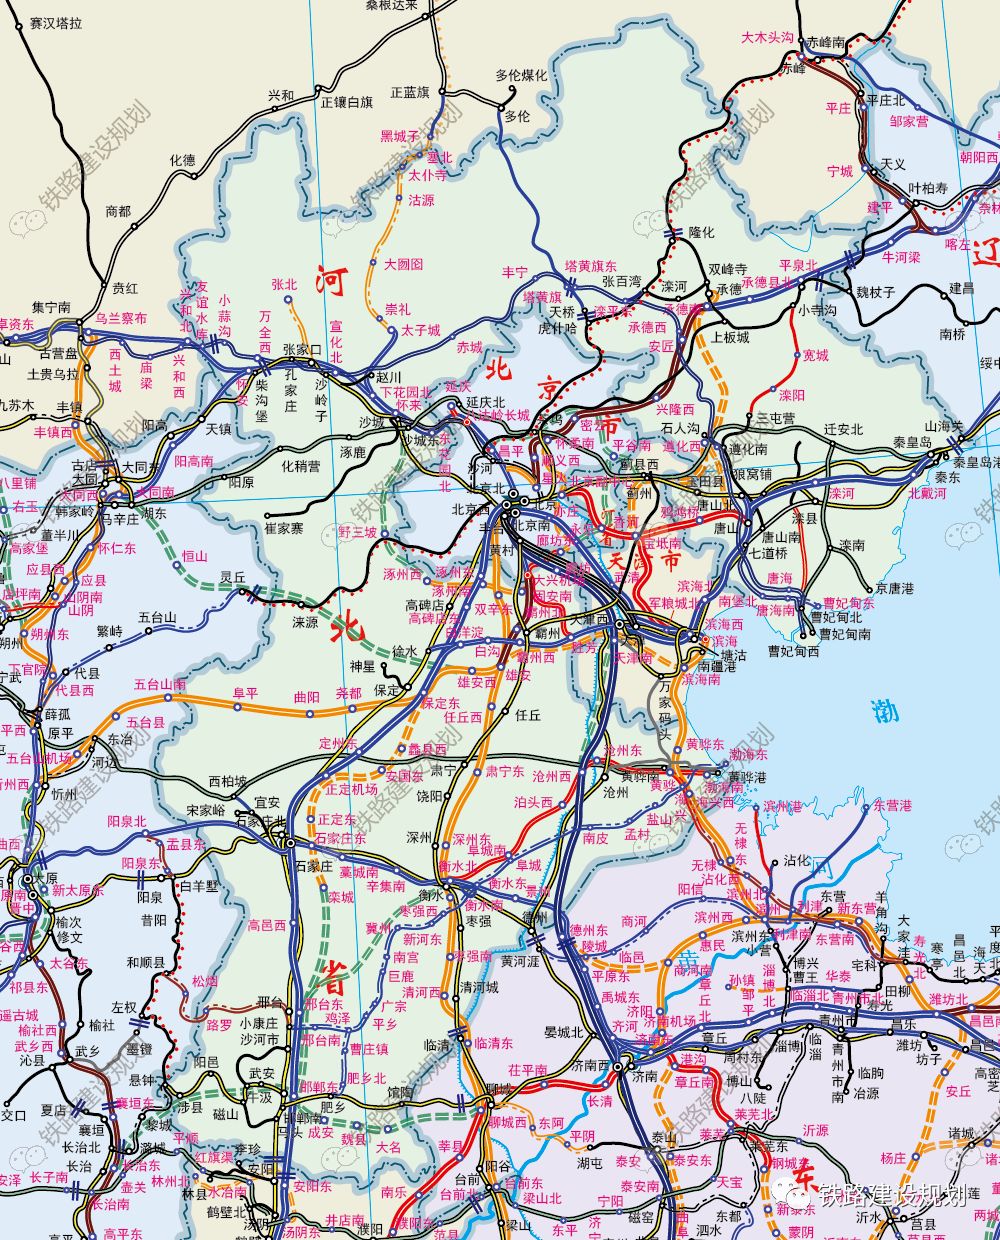 石衡沧港城际铁路计划开工2020年省重点项目计划公布